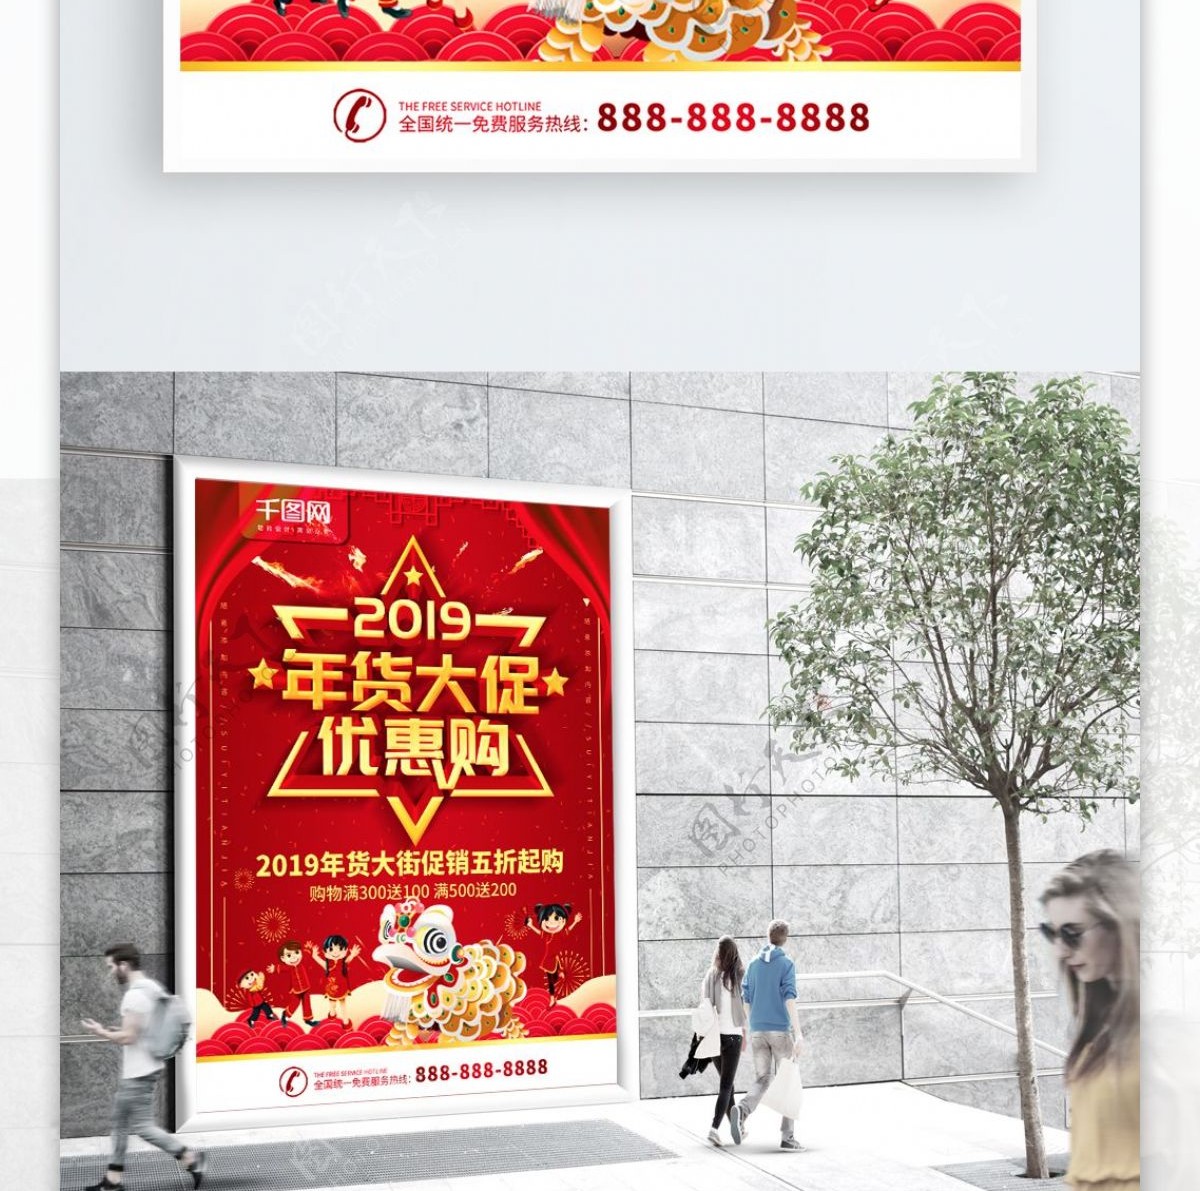 简约红色立体字年货大促促销宣传海报